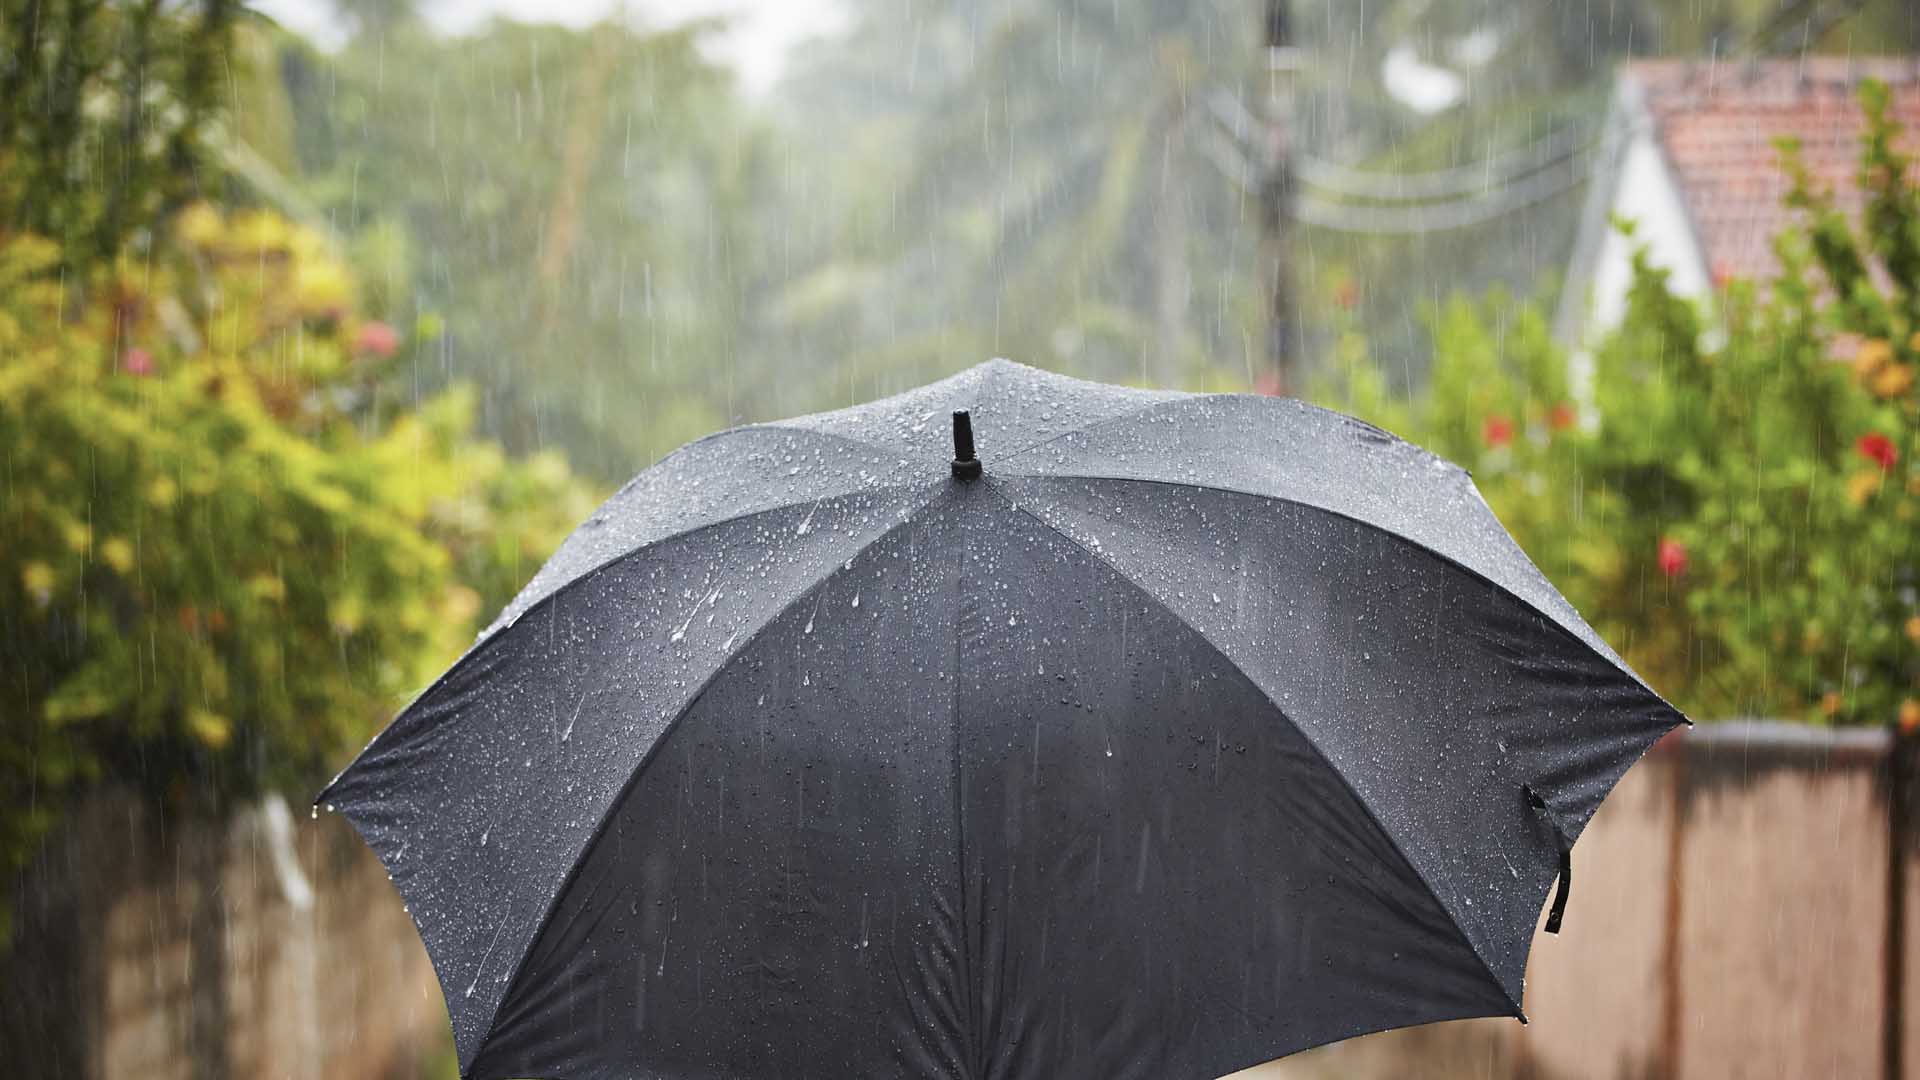 Роль зонтика. Мокрый зонт. Зонт под дождем. Под зонтиком. Дождевой зонт.